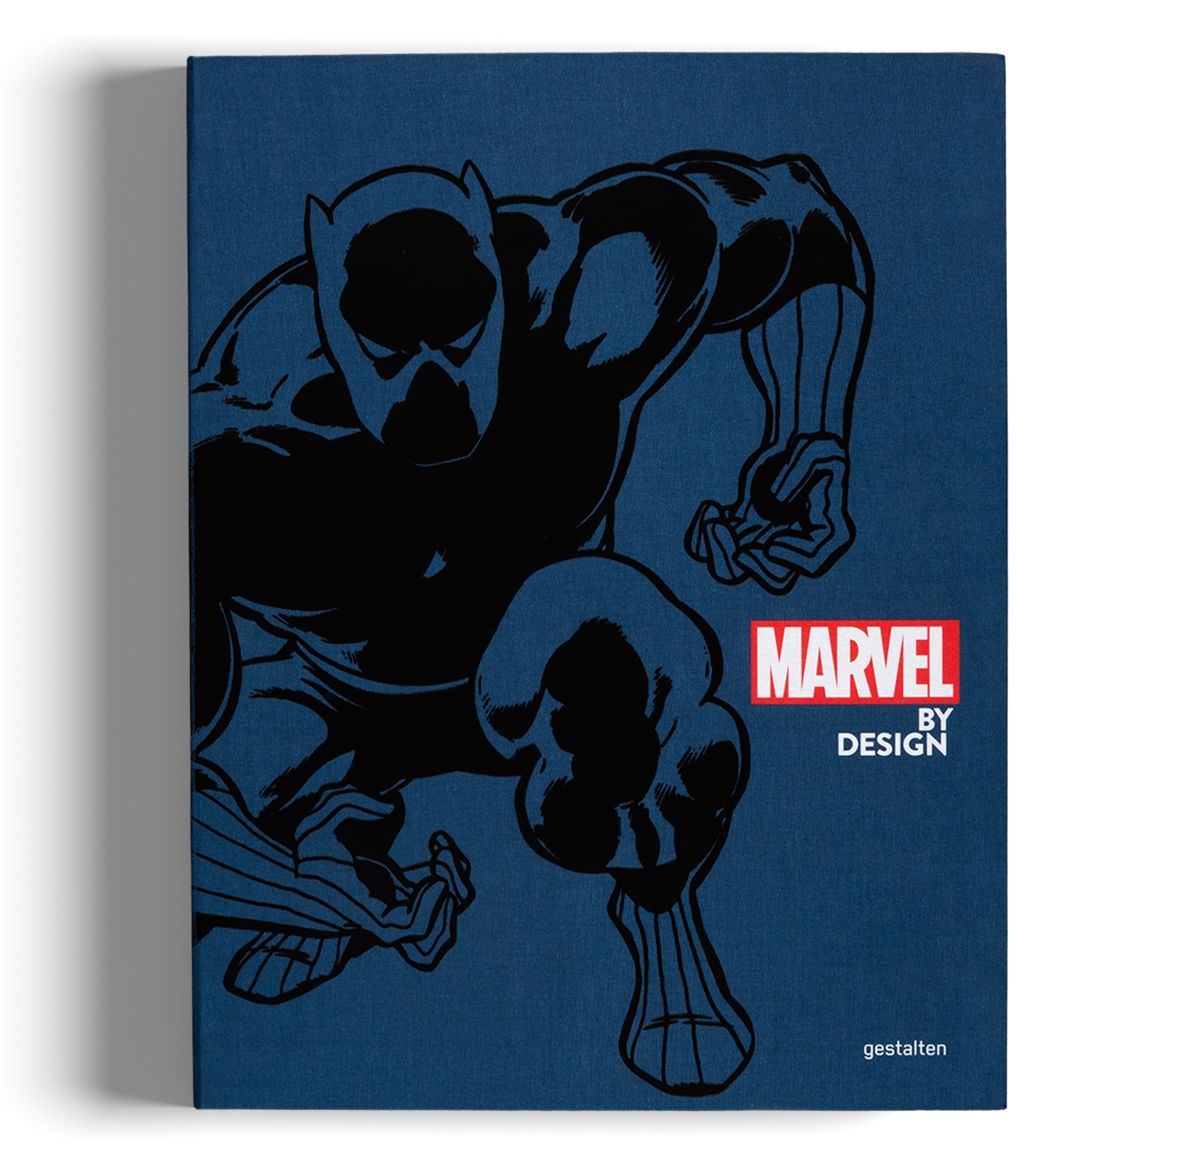 Marvel By Design. Special edition. Издательство gestalten, фото 1